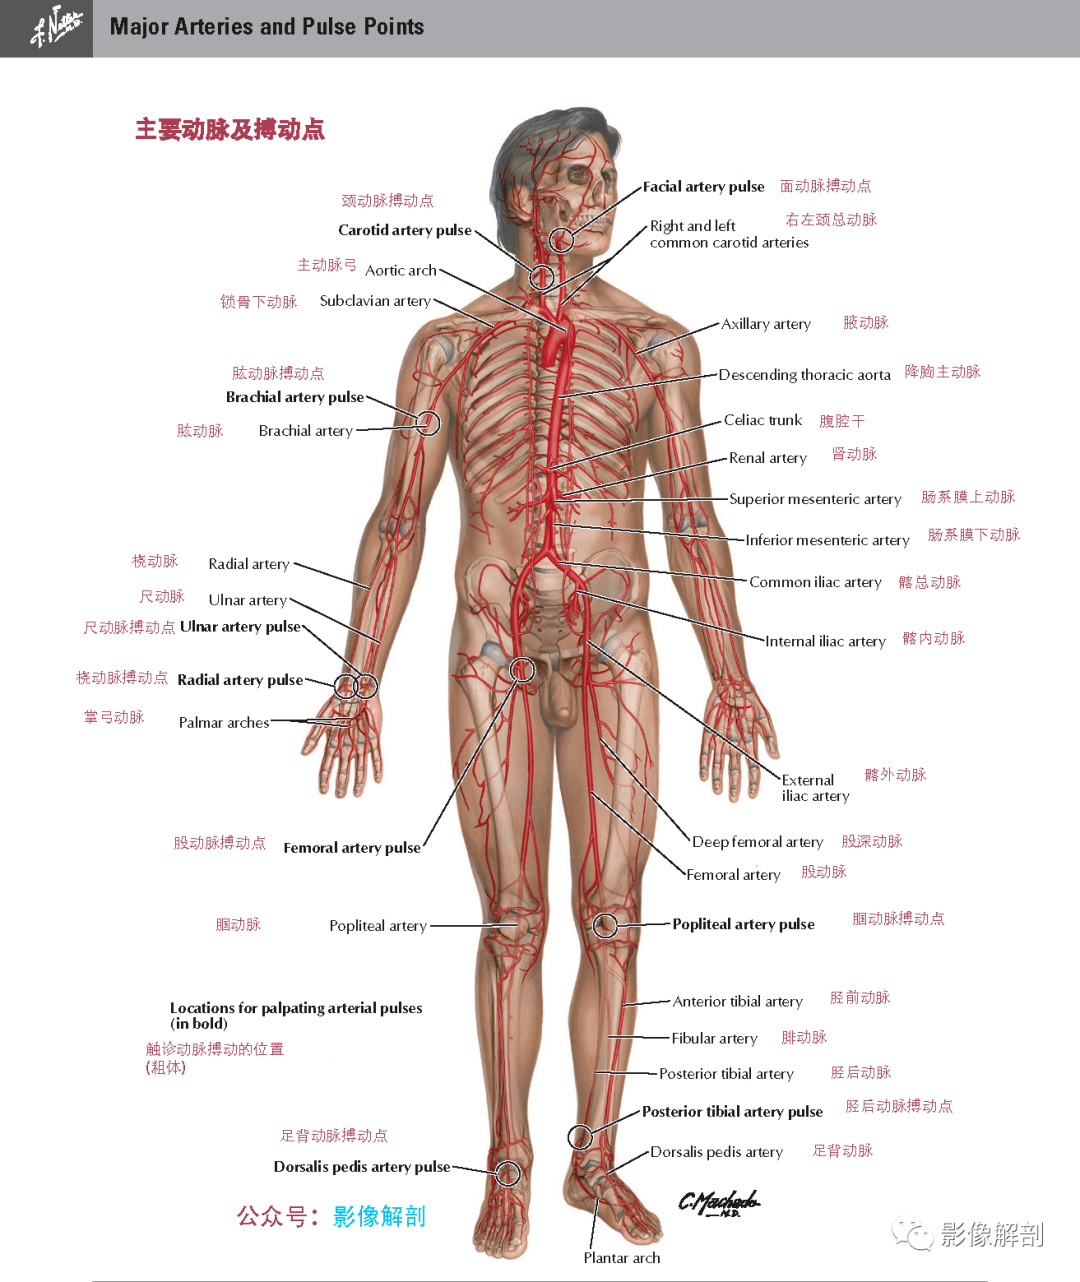 全身主要动脉,静脉,神经及淋巴系统概述  1,主要动脉及搏动点 版权